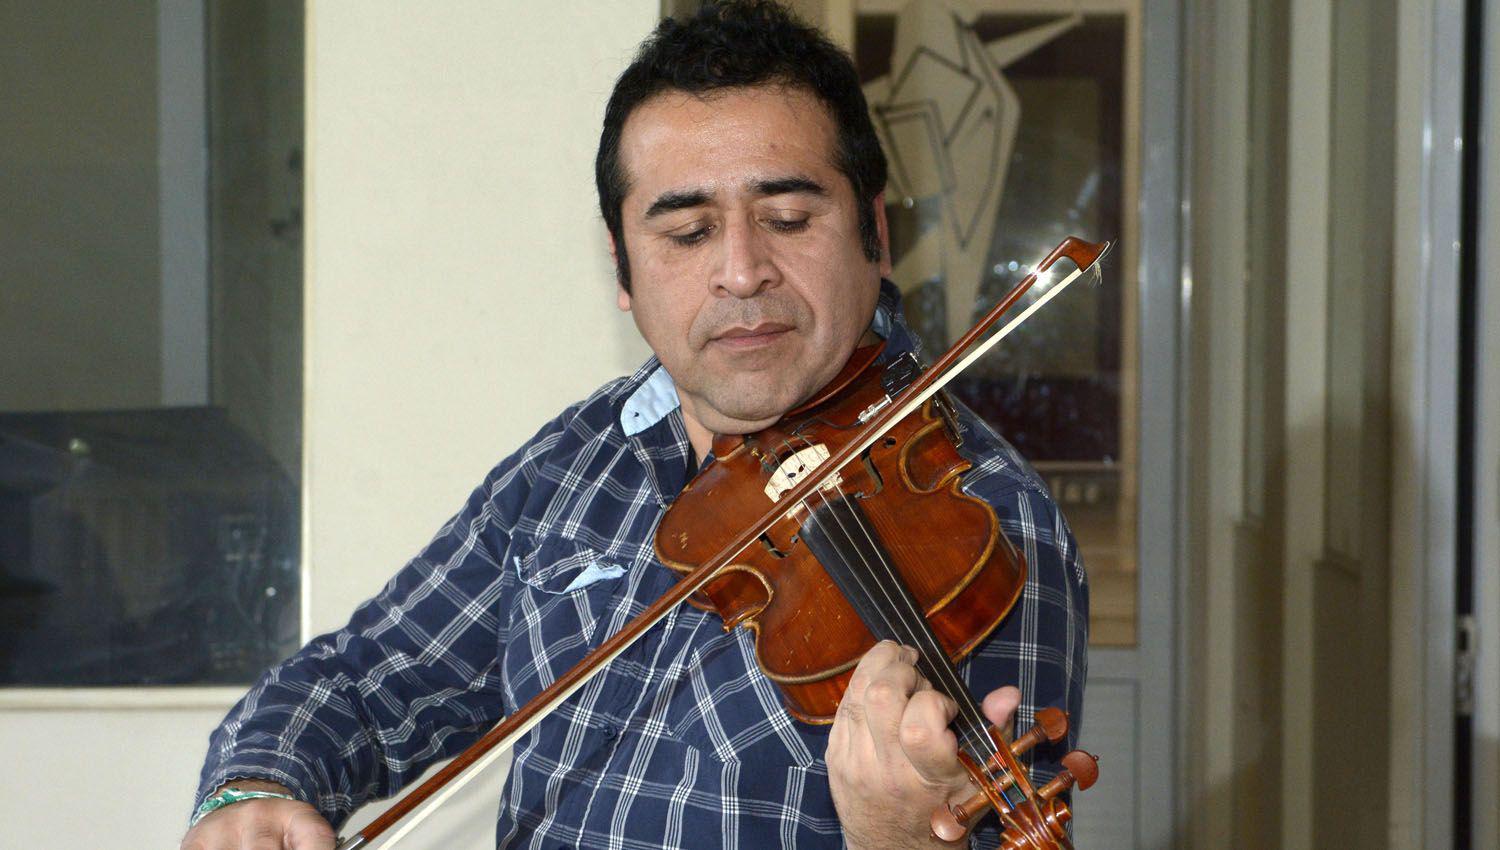 La Fiesta del Violinero el 14 de agosto en Oliacutempico